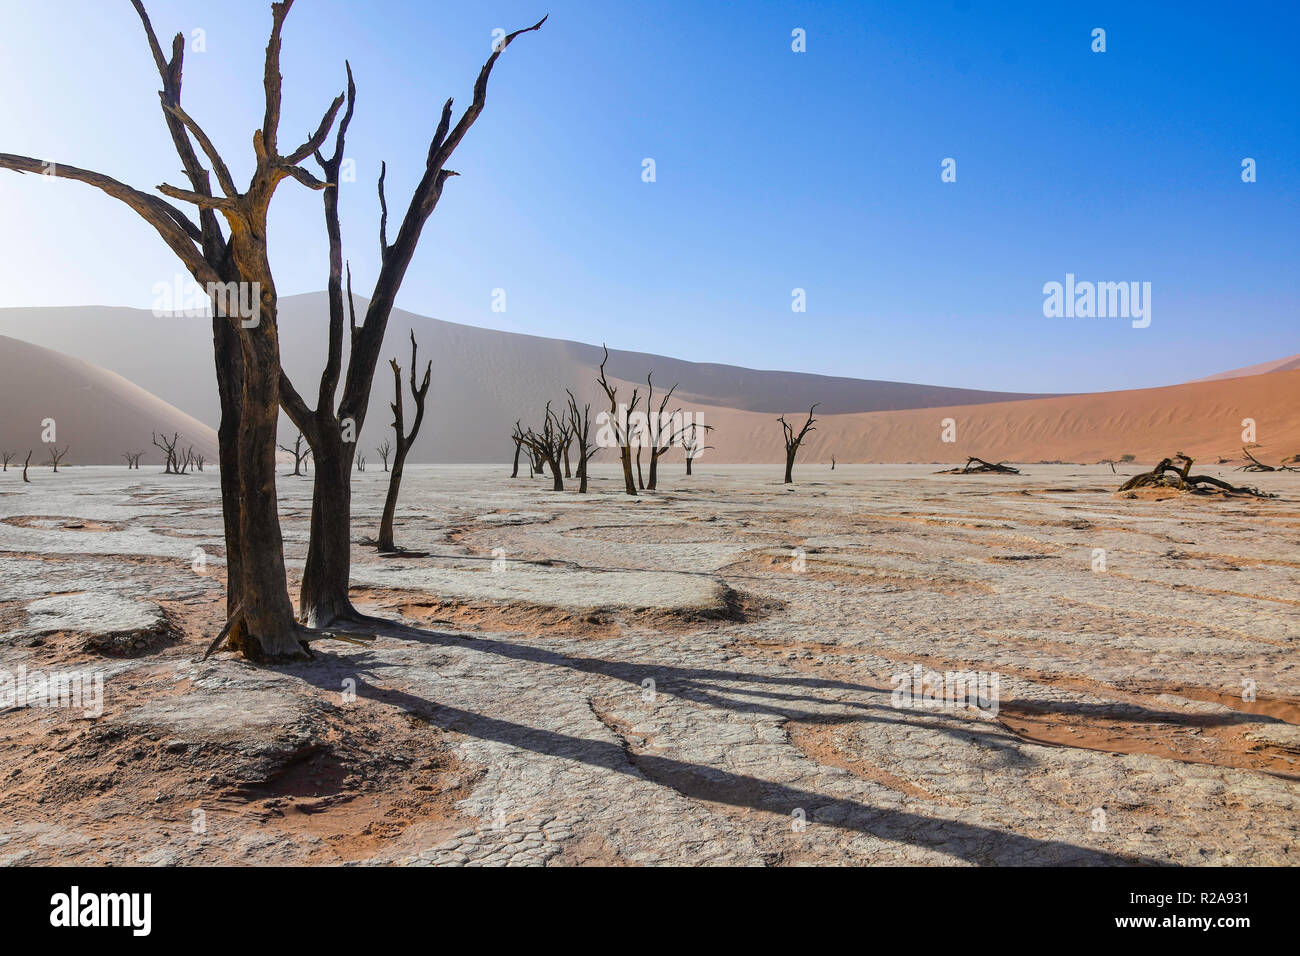 Decine di turisti ogni giorno accorrono per vedere la zona conosciuta come Deadvlei nel deserto del Namib in Namibia. Foto Stock